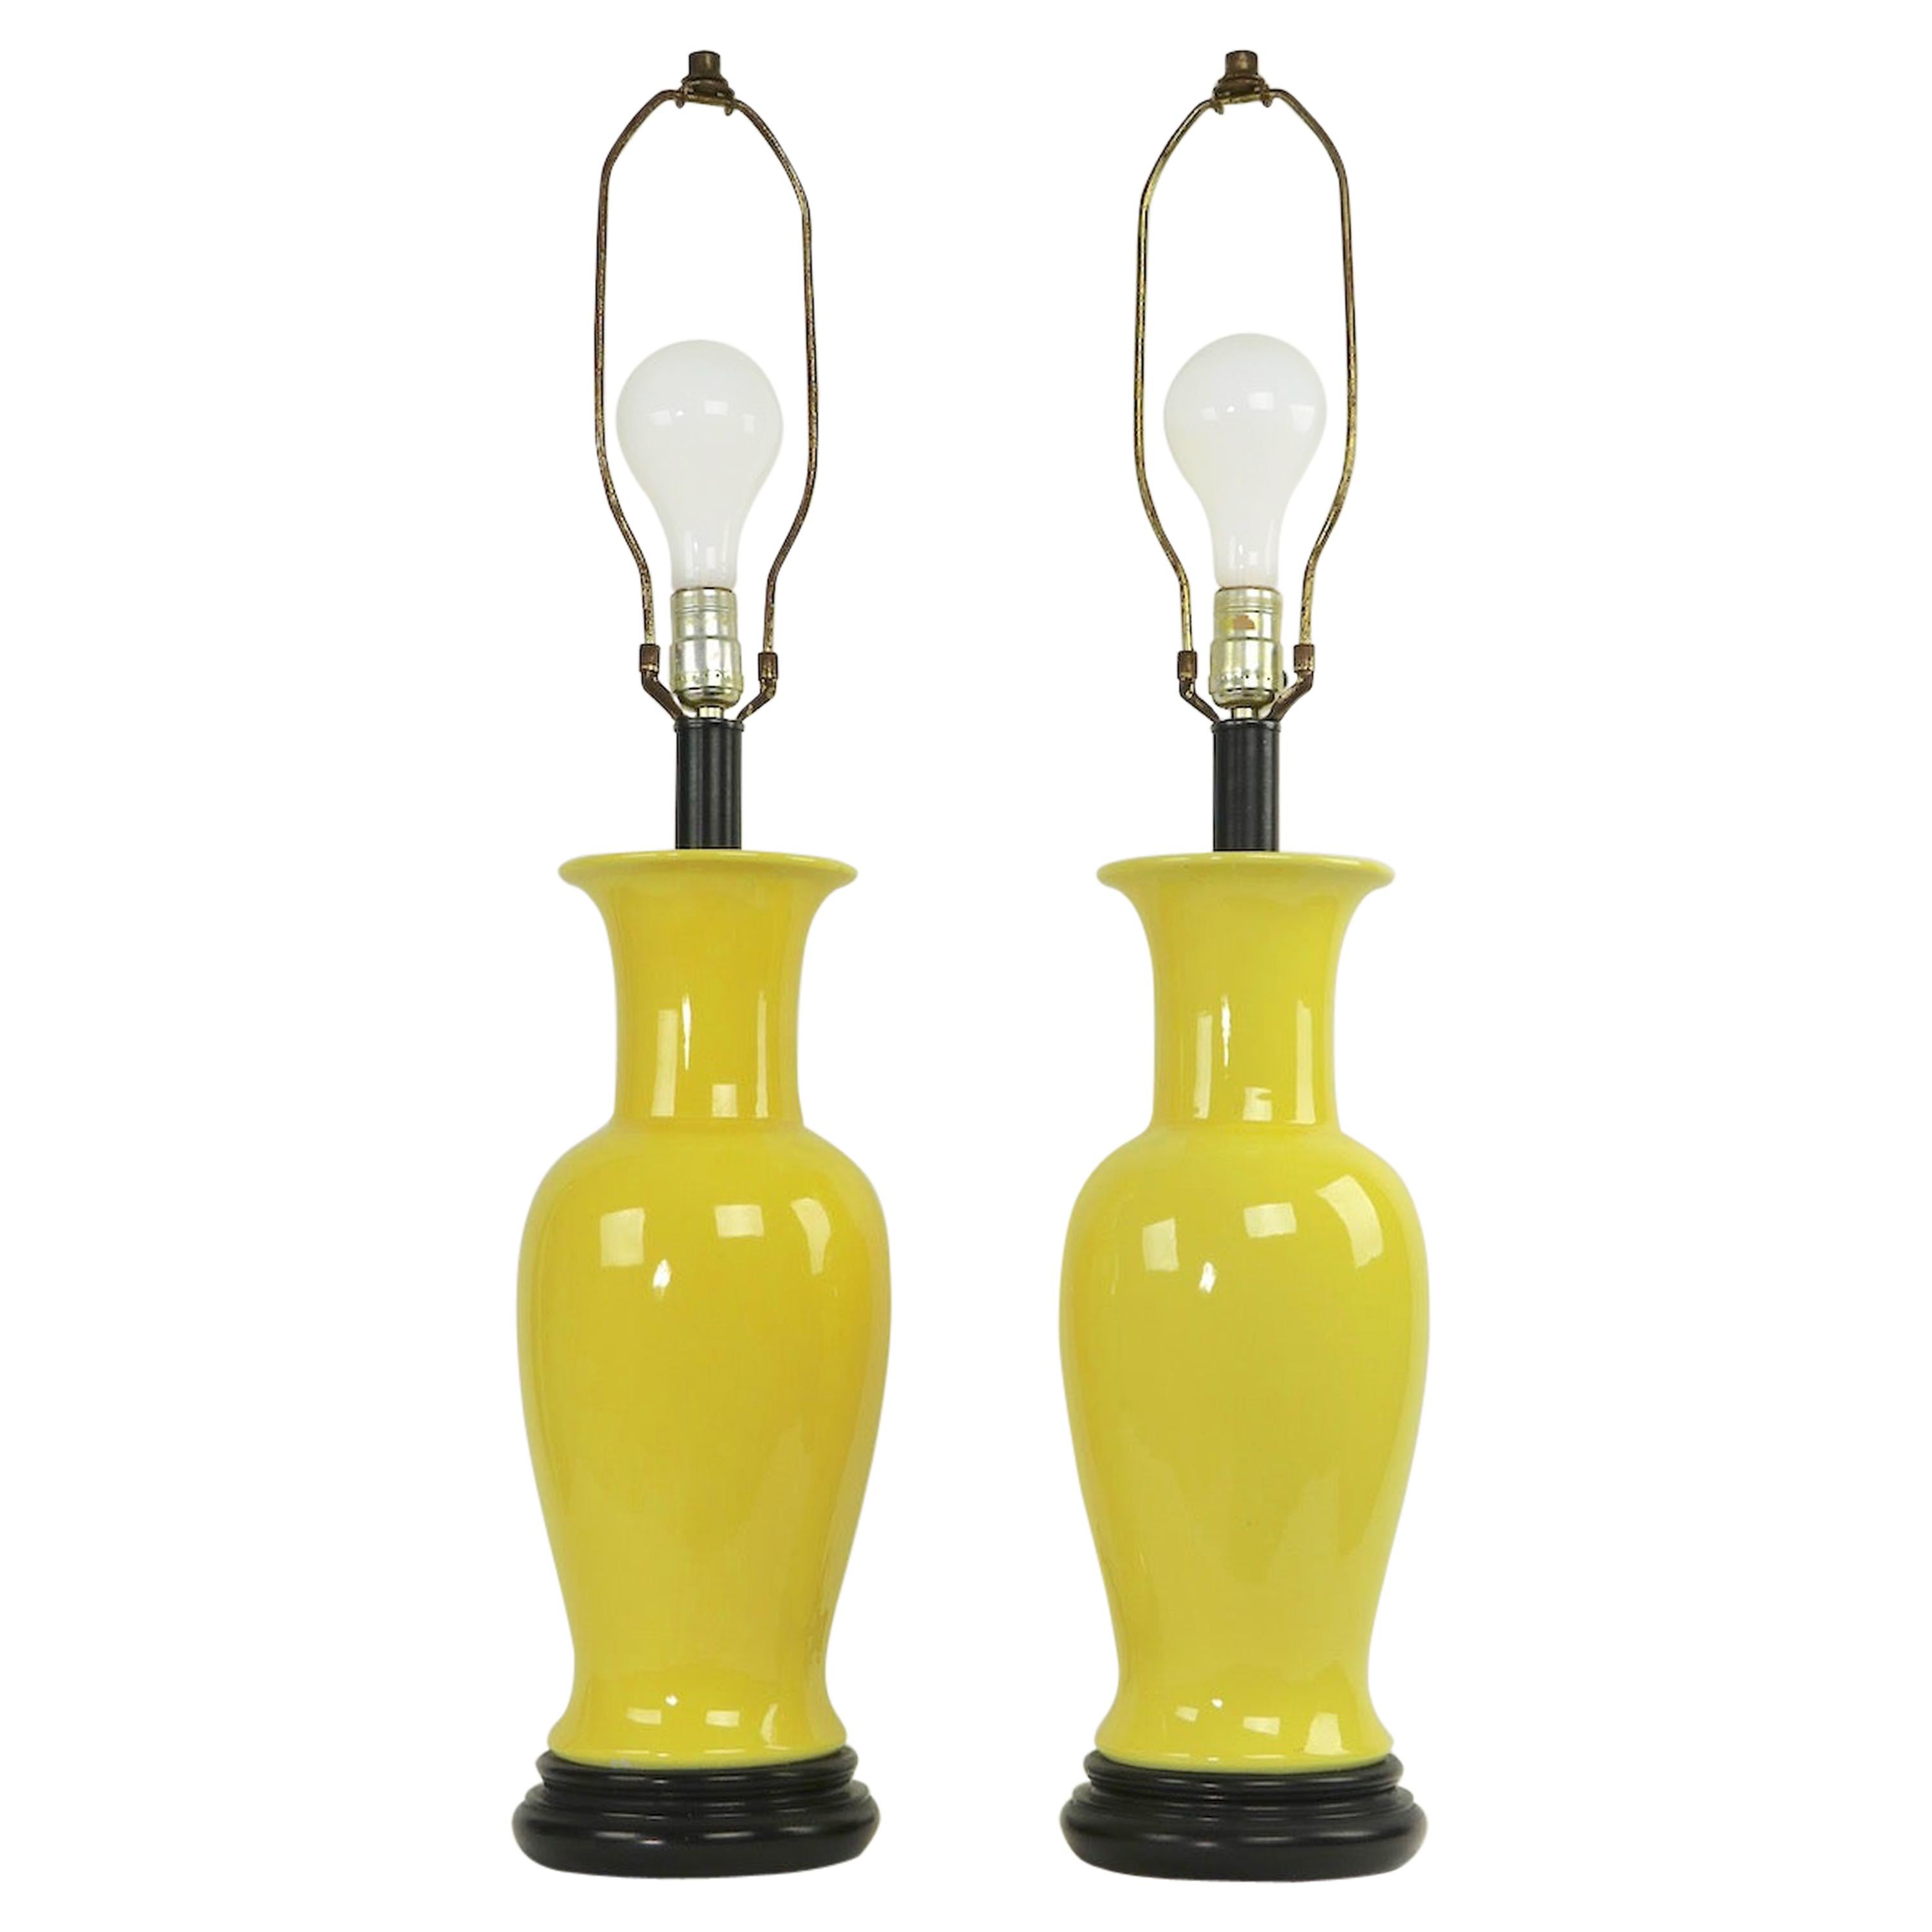 Ein Paar keramische Tischlampen mit leuchtend gelber Glasur:: die Warren Kessler zugeschrieben werden